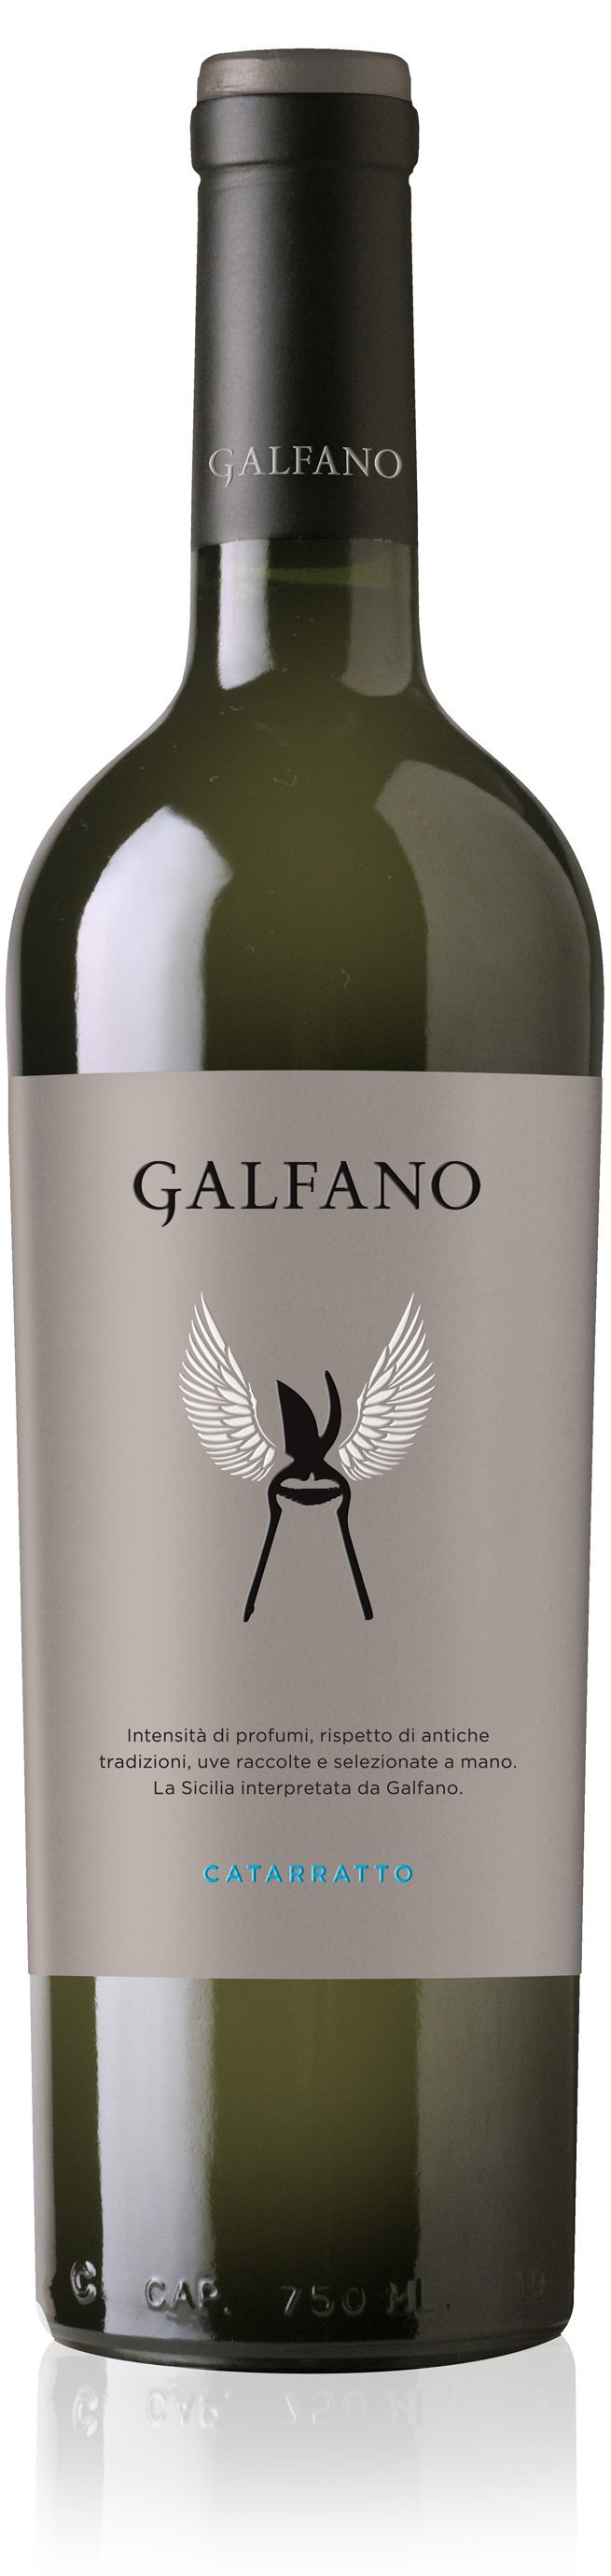 galfano wine bottle large